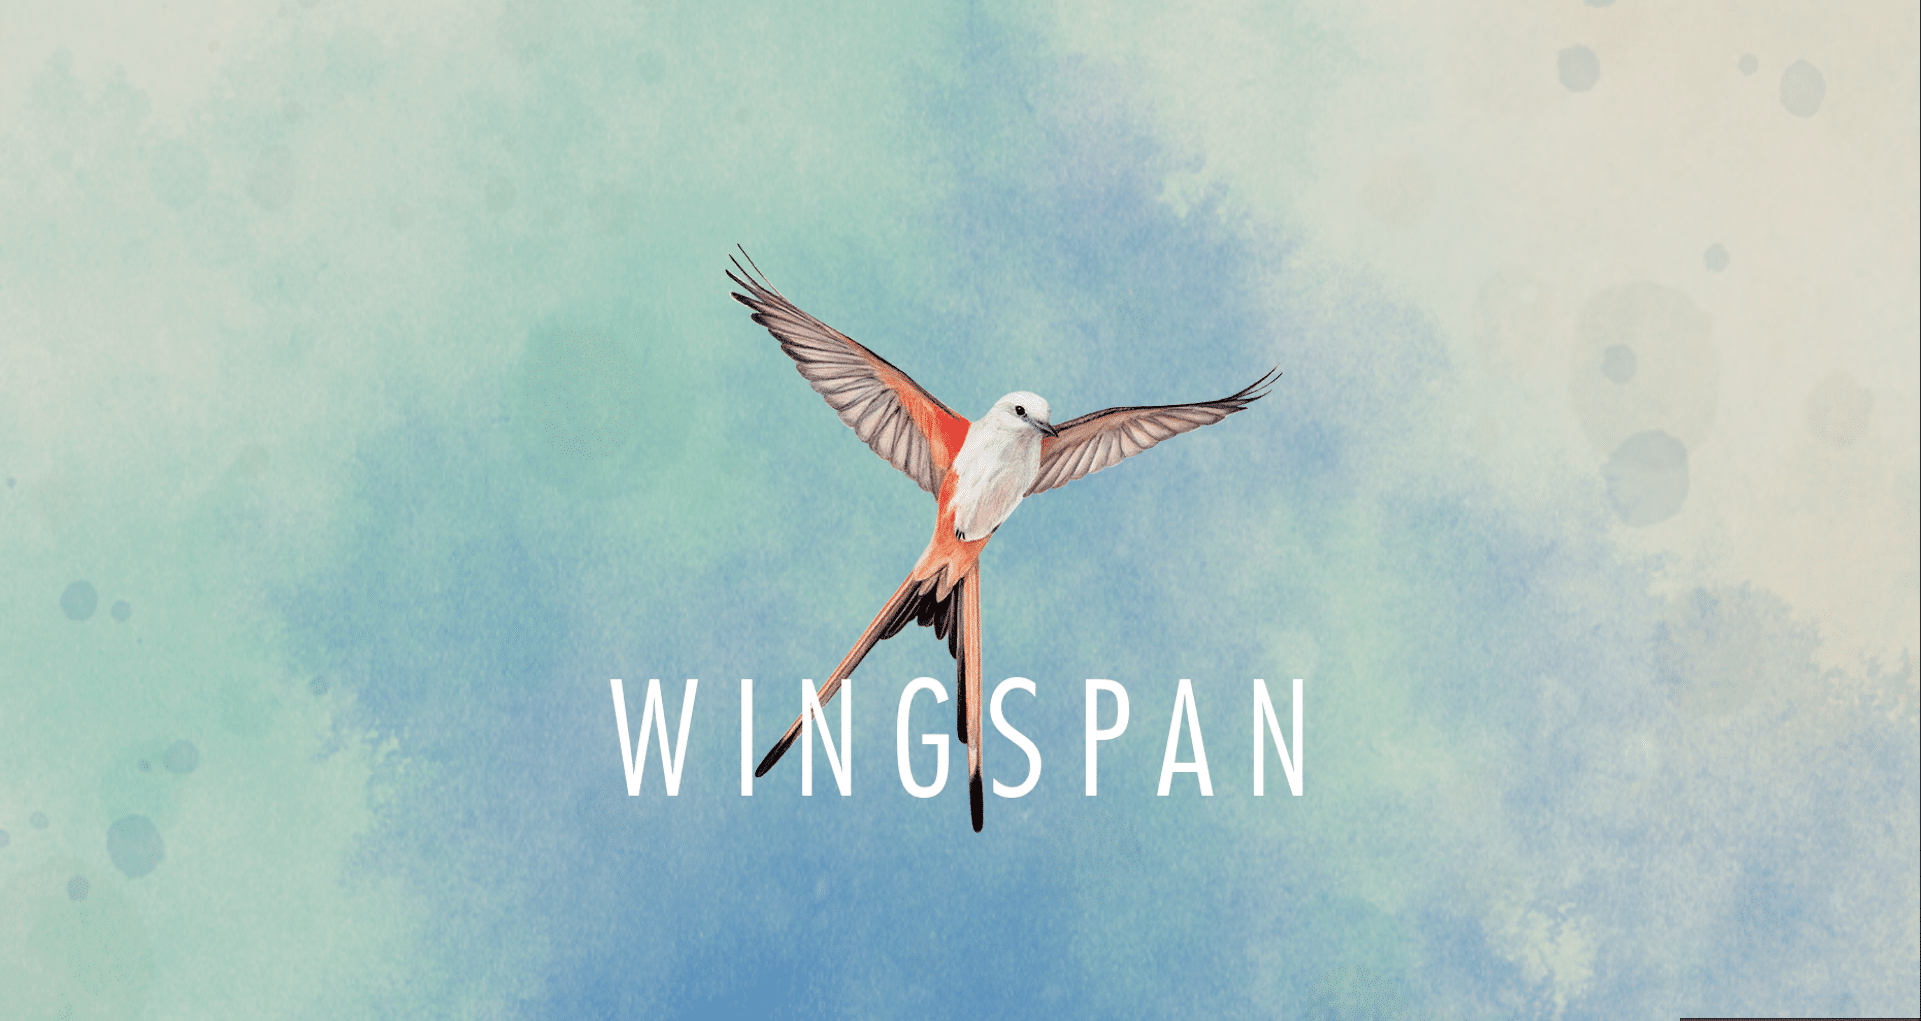 Wingspan Digital App loading screen, scissor-tailed flycatcher.